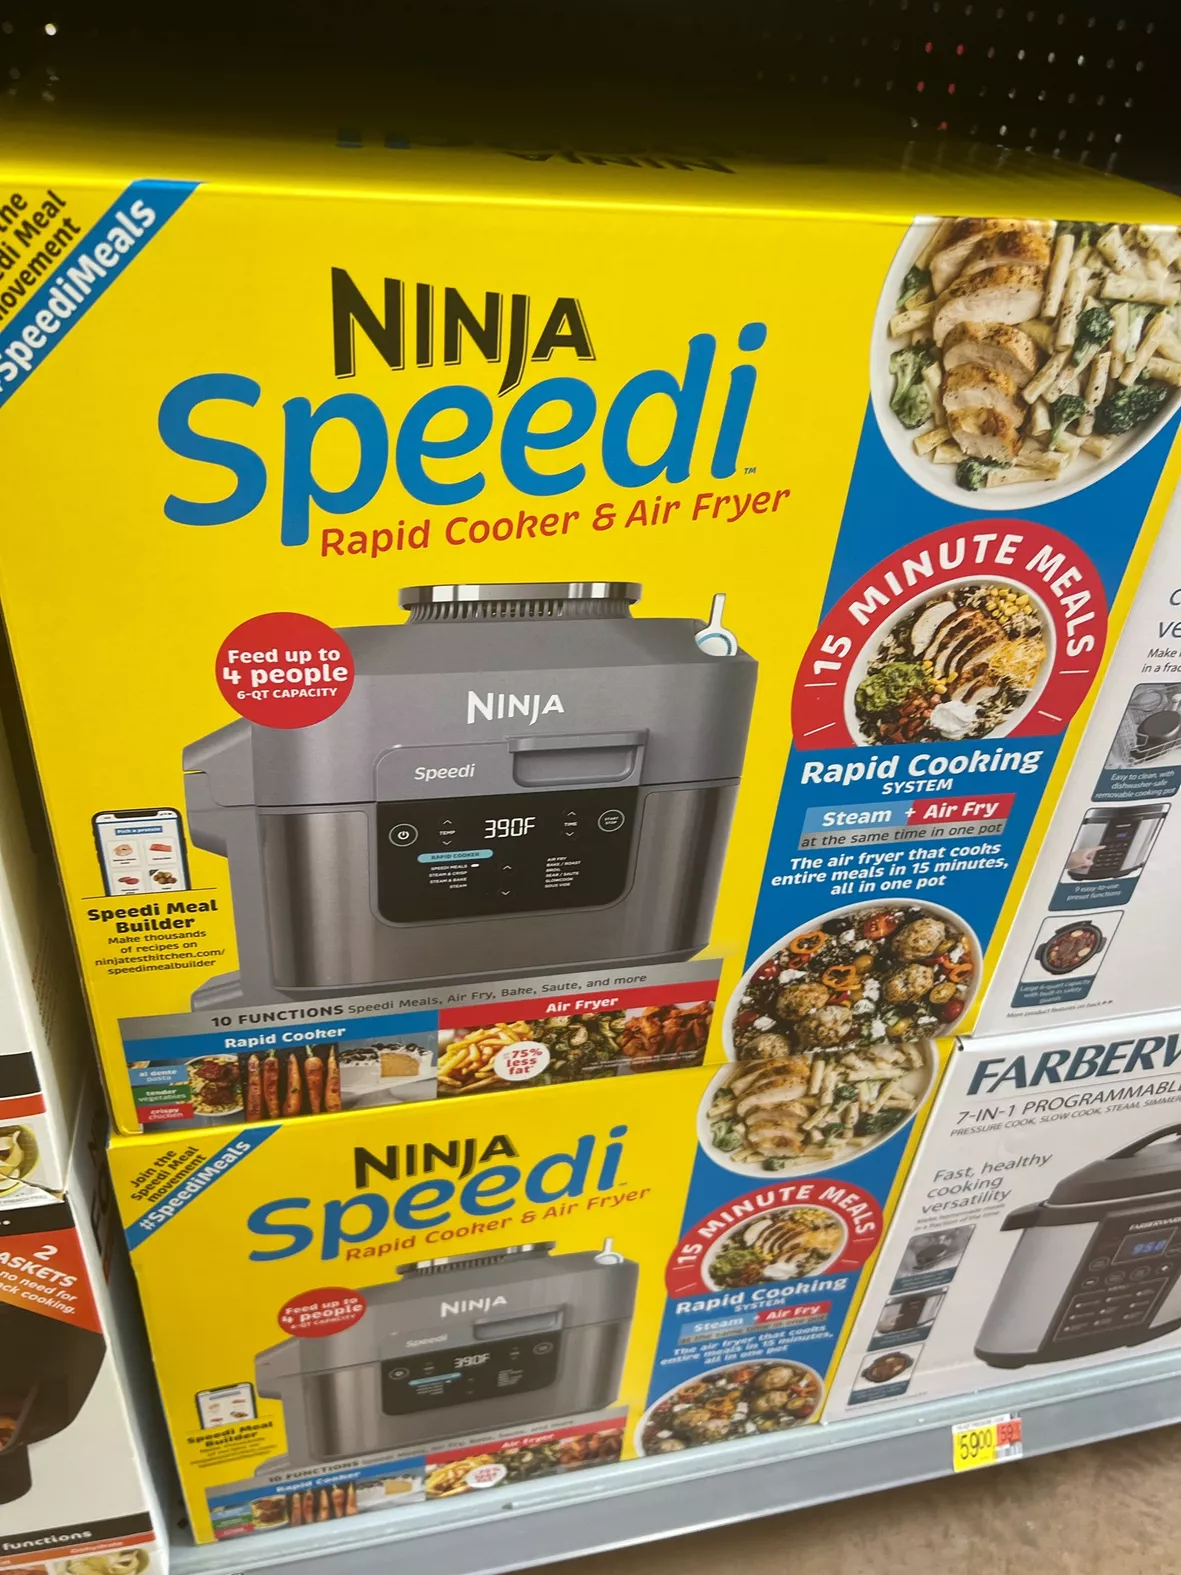 Ninja Speedi 10-in-1 Rapid Cooker